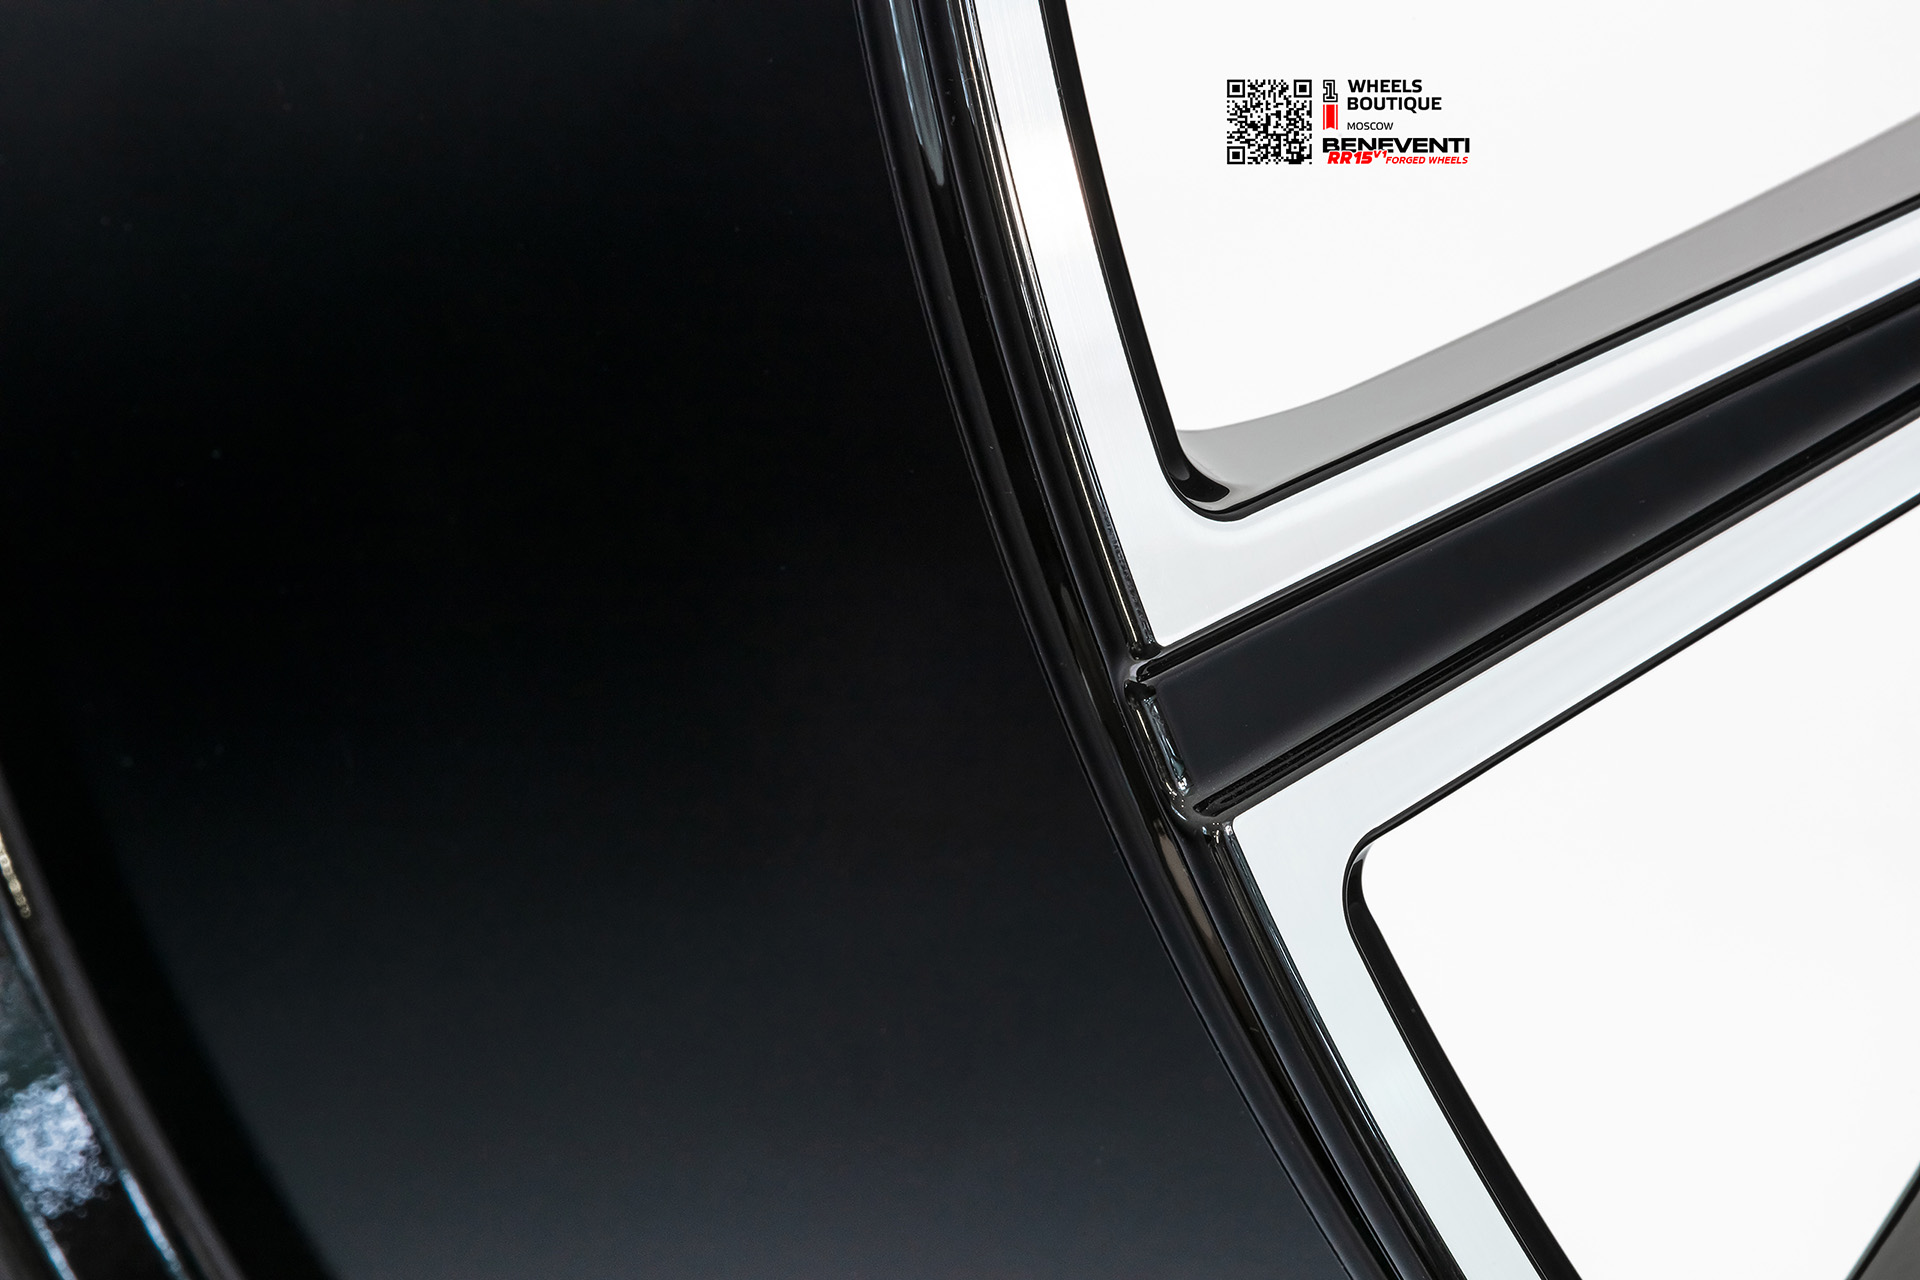 Кованый моноблок Beneventi RR15 V1 в отделке черный глянец с алмазной проточкой для Mercedes GLS